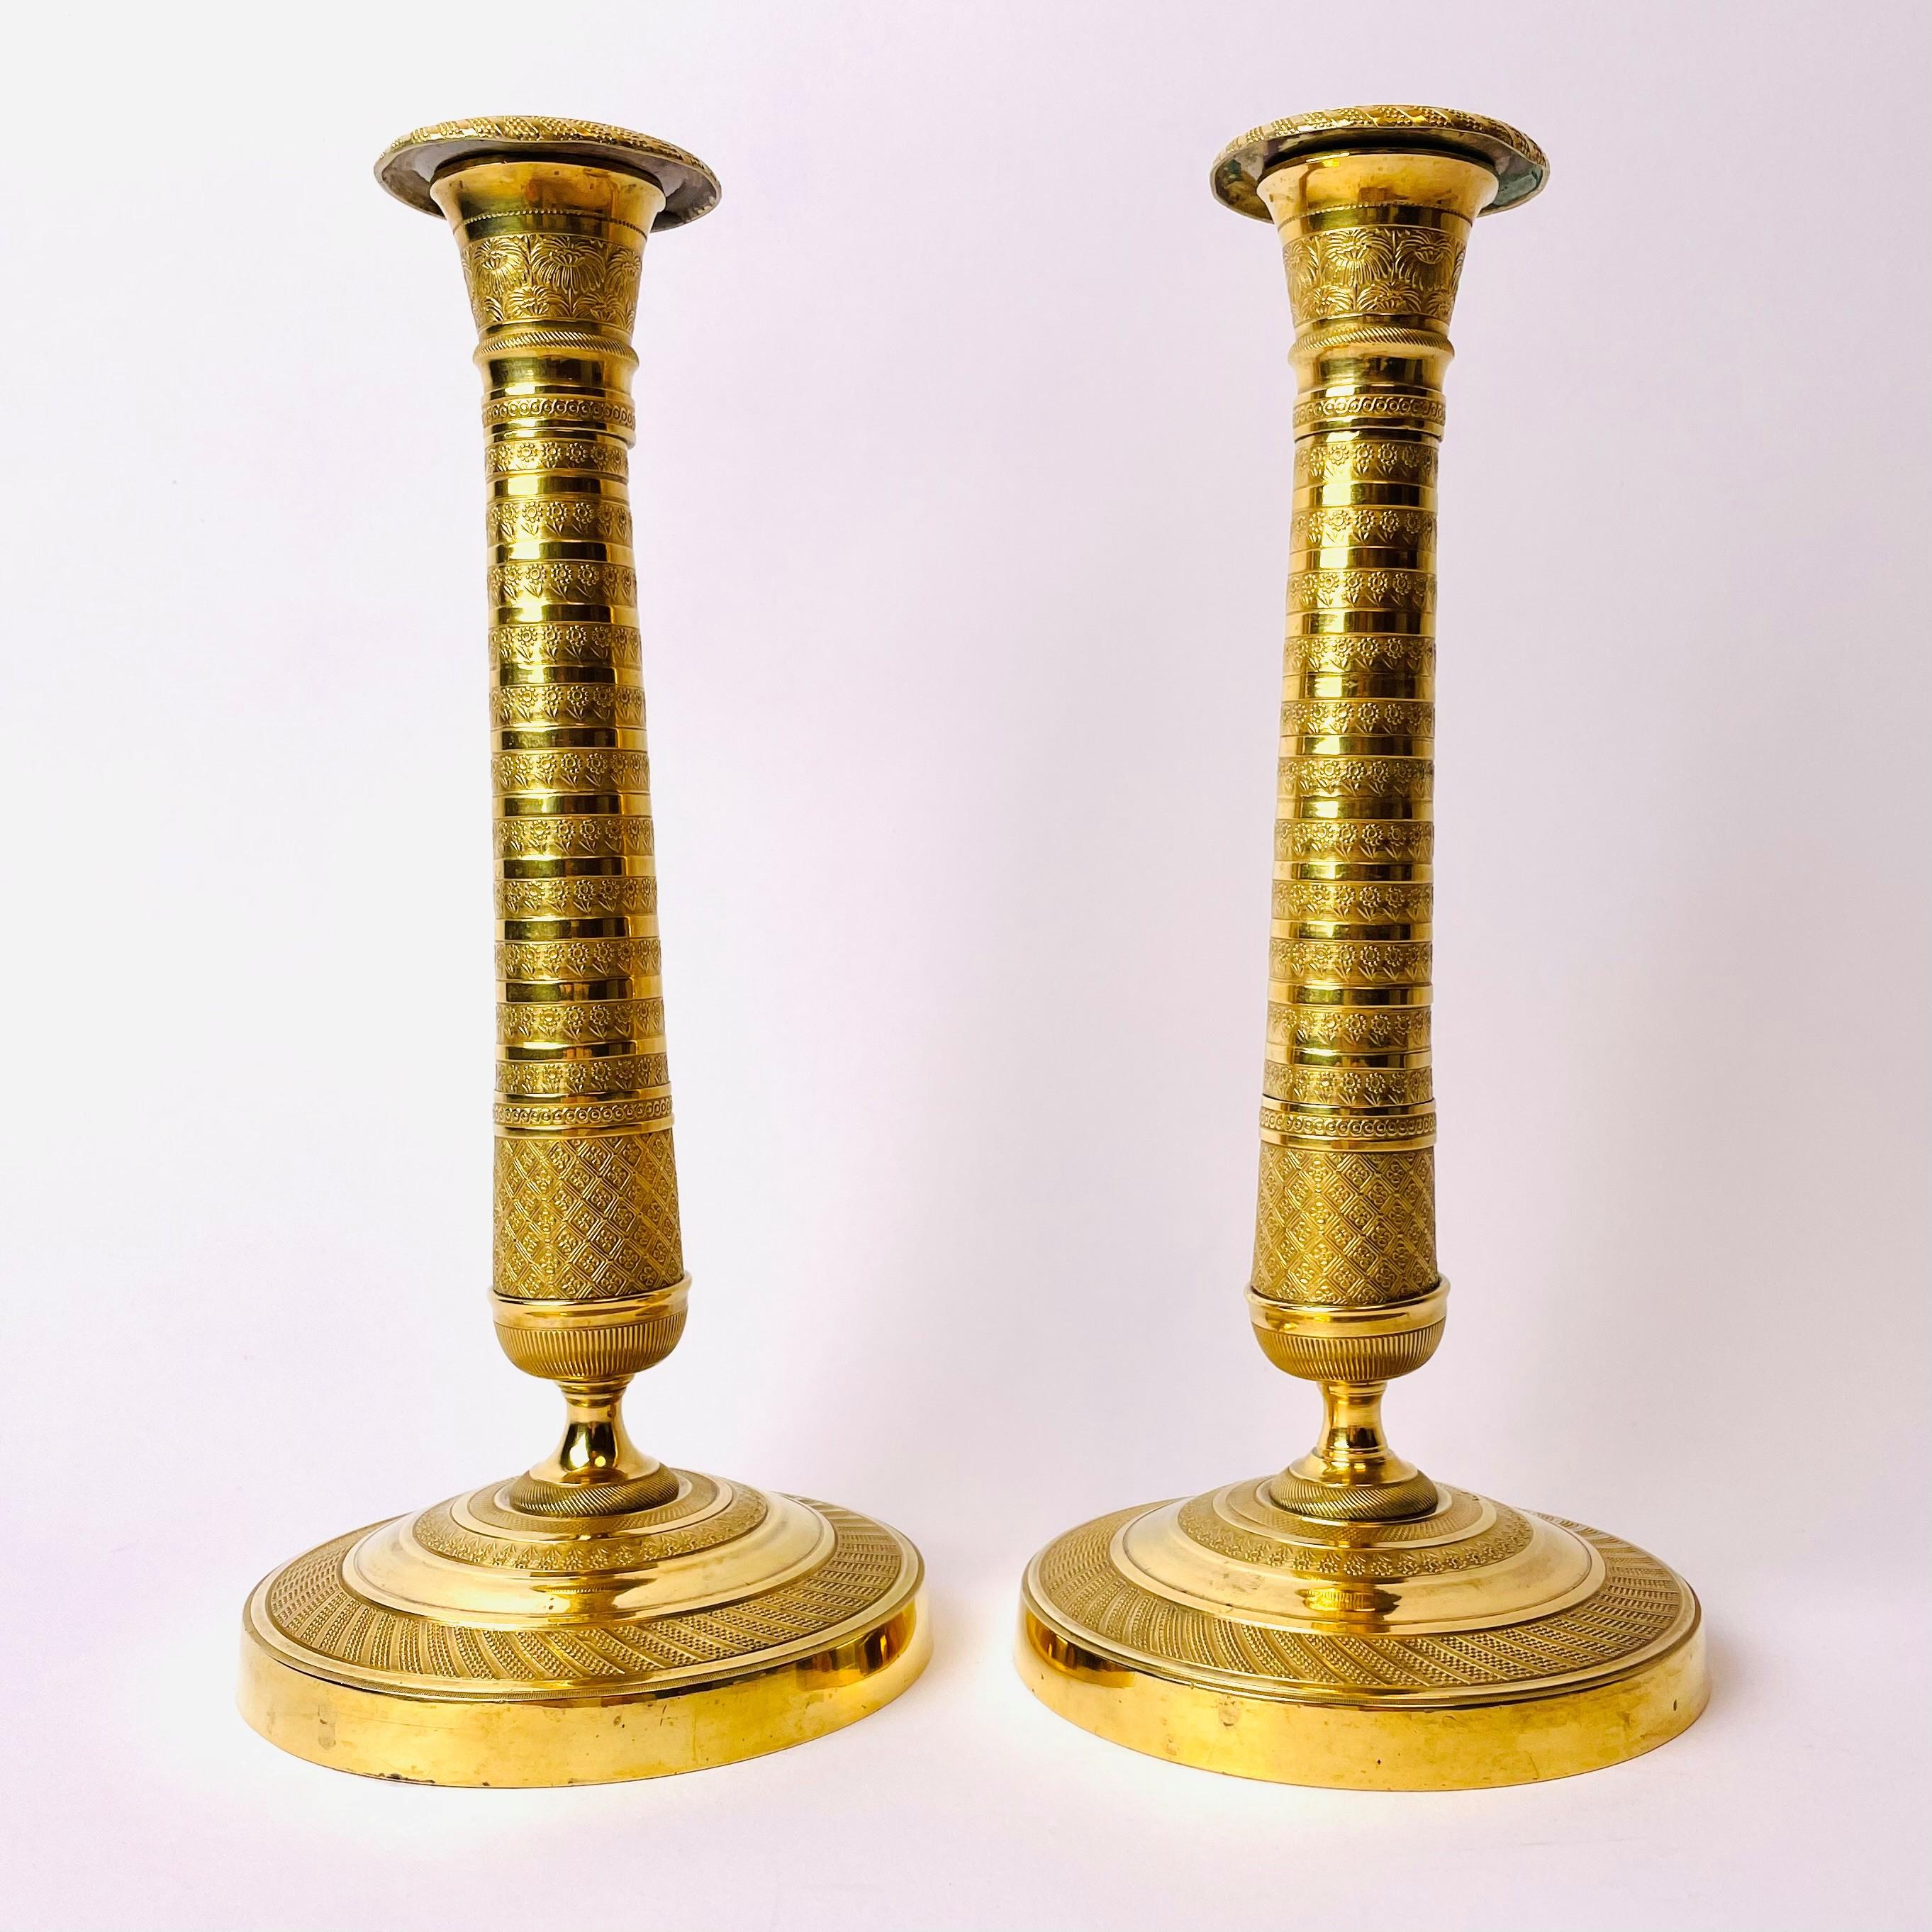 Excellente paire de chandeliers du début du XIXe siècle en bronze doré. Ces chandeliers Empire néoclassiques sont fabriqués en France, vers 1820. Modèle inhabituel avec des rayures et des décorations florales joliment stylisées.

Usure conforme à